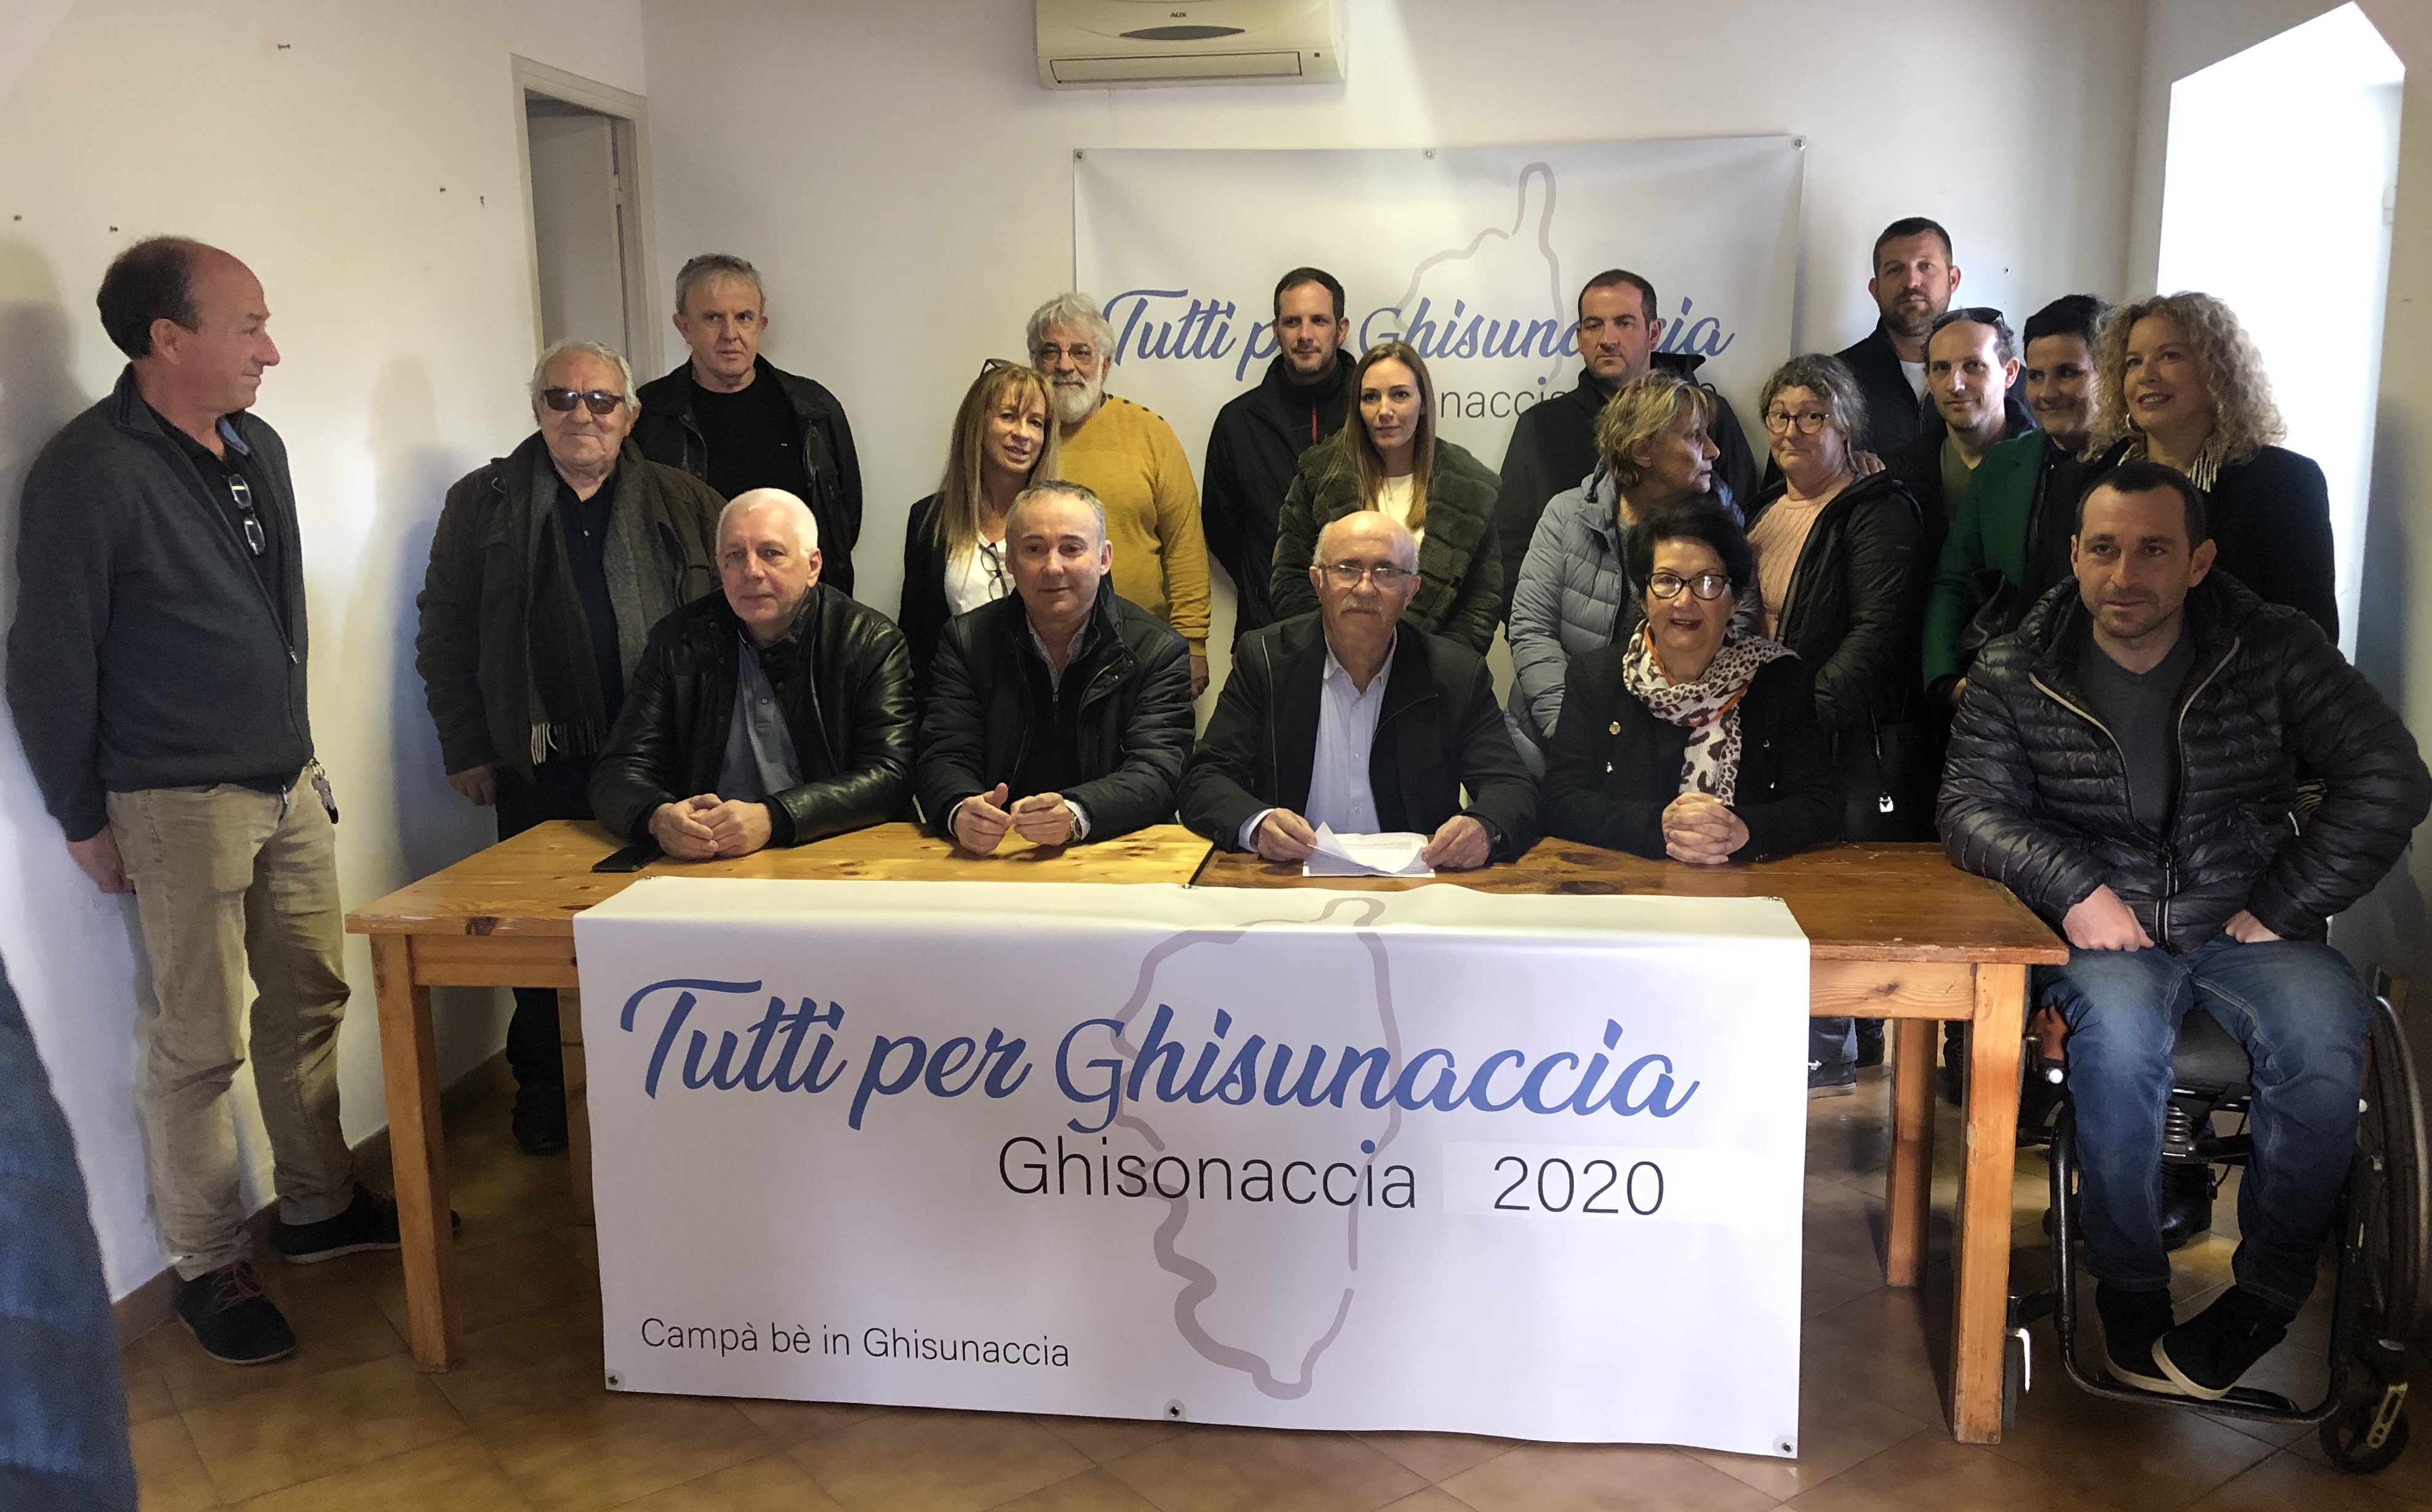 Francis Giudici et les membres de sa liste : "Tutti per Ghisunaccia"